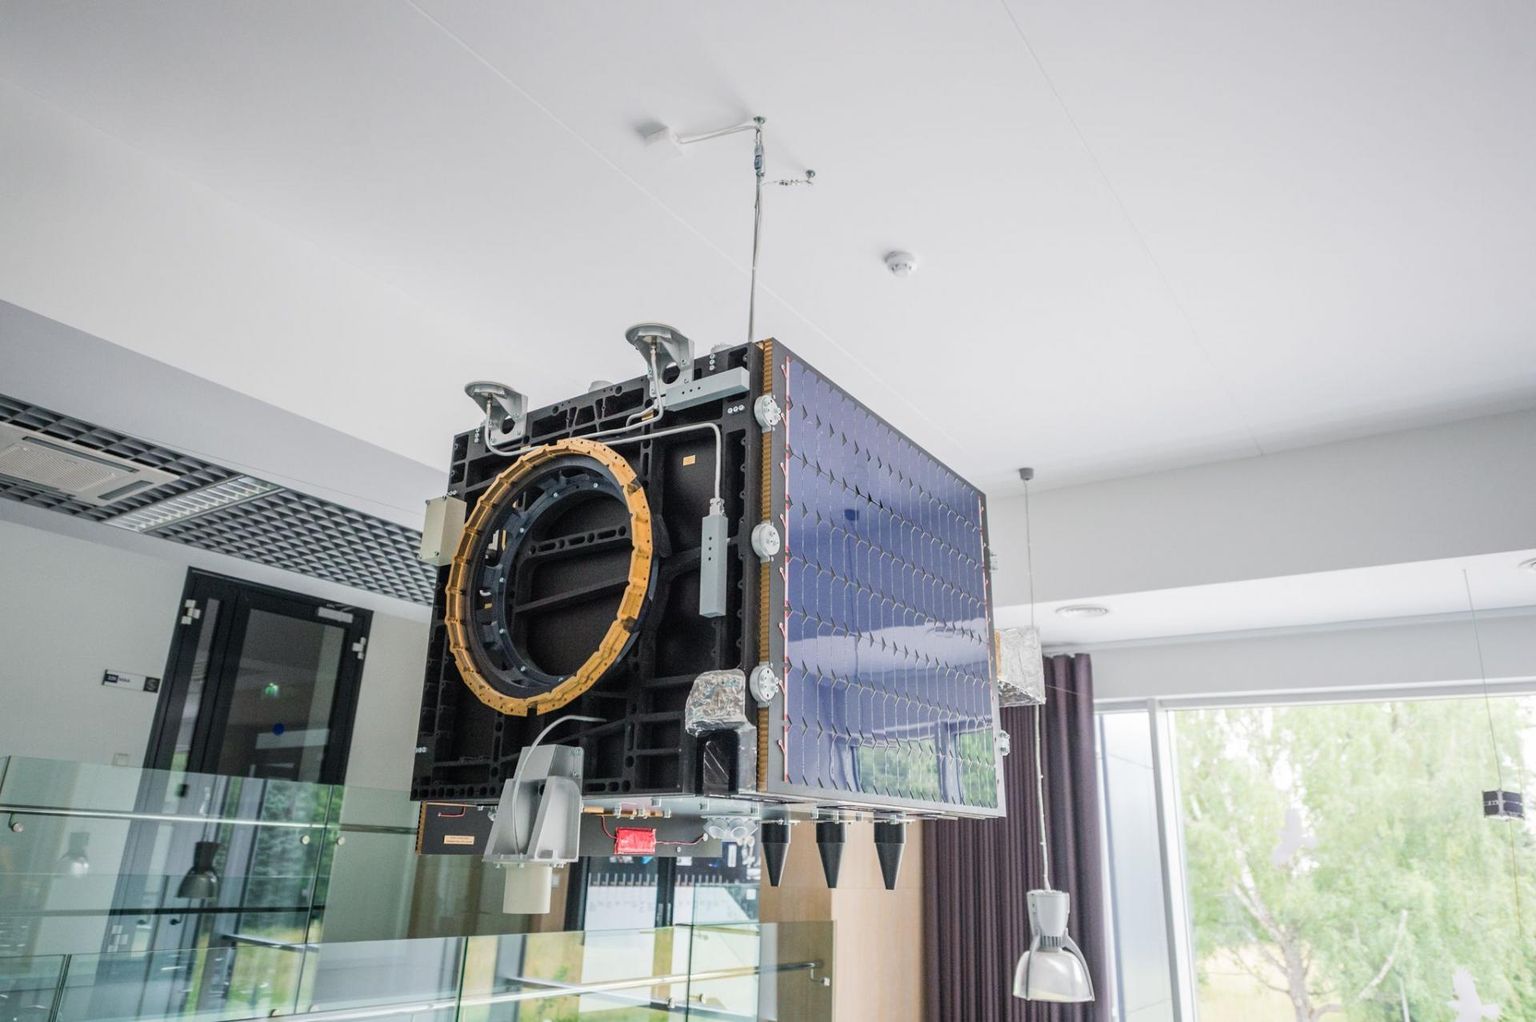 ESTCube-2 on Eesti tudengisatelliidi programmi raames arendamisel olev tehiskaaslane.